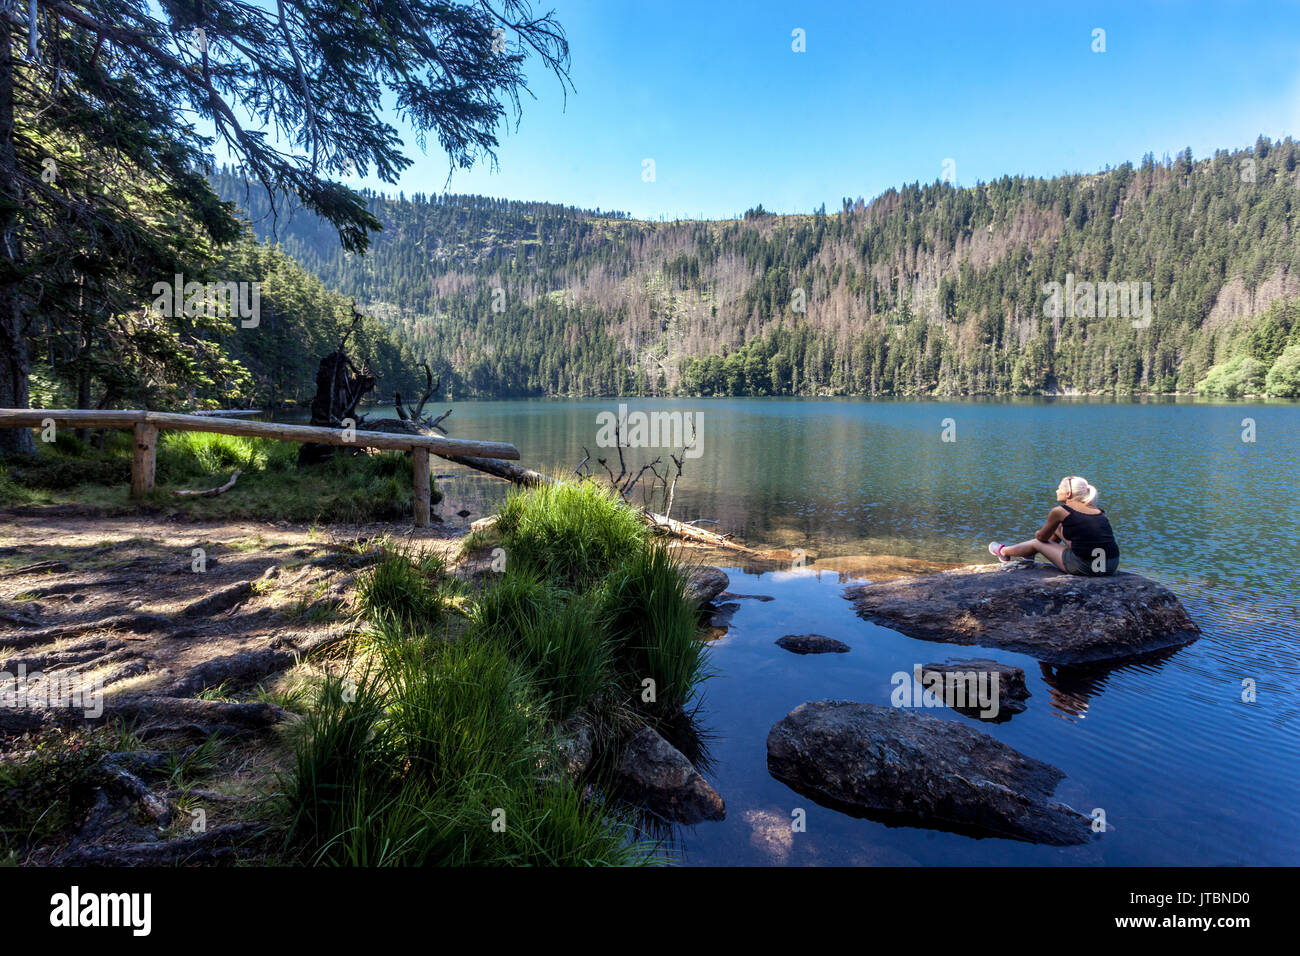 Lac noir glaciaire, cerne jezero dans les montagnes de Sumava, parc national, République tchèque. Femme assise sur la pierre seule Banque D'Images